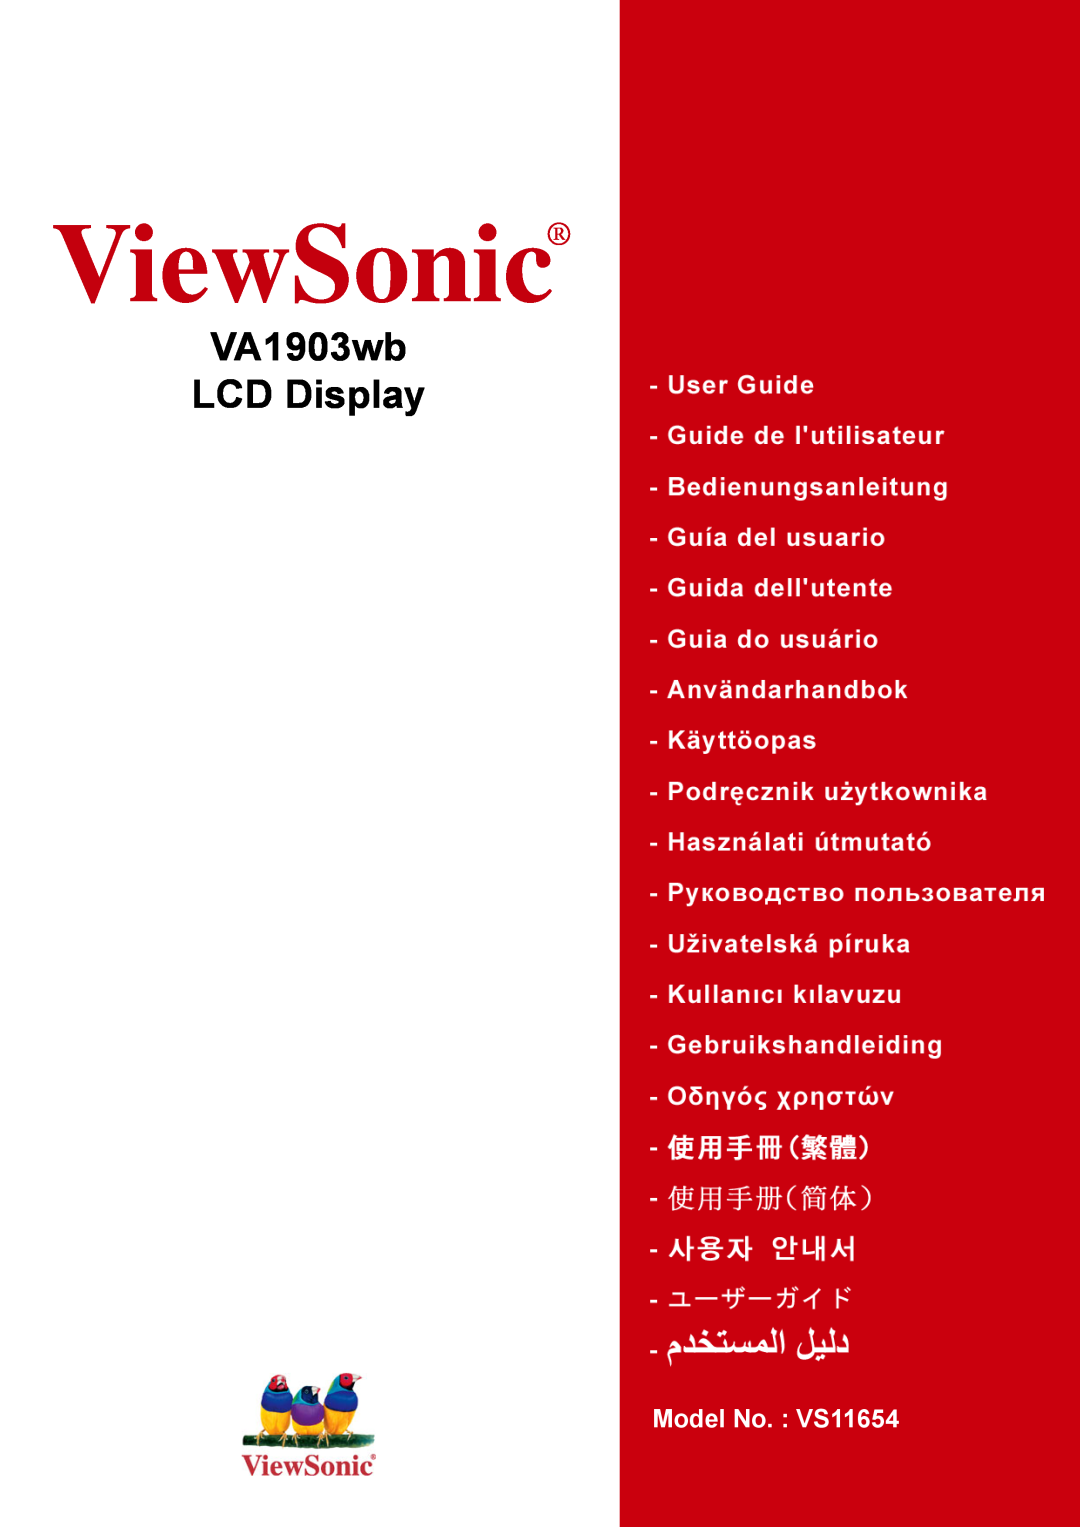 ViewSonic manual ViewSonic, VA1903wb LCD Display, Model No. : VS11654 